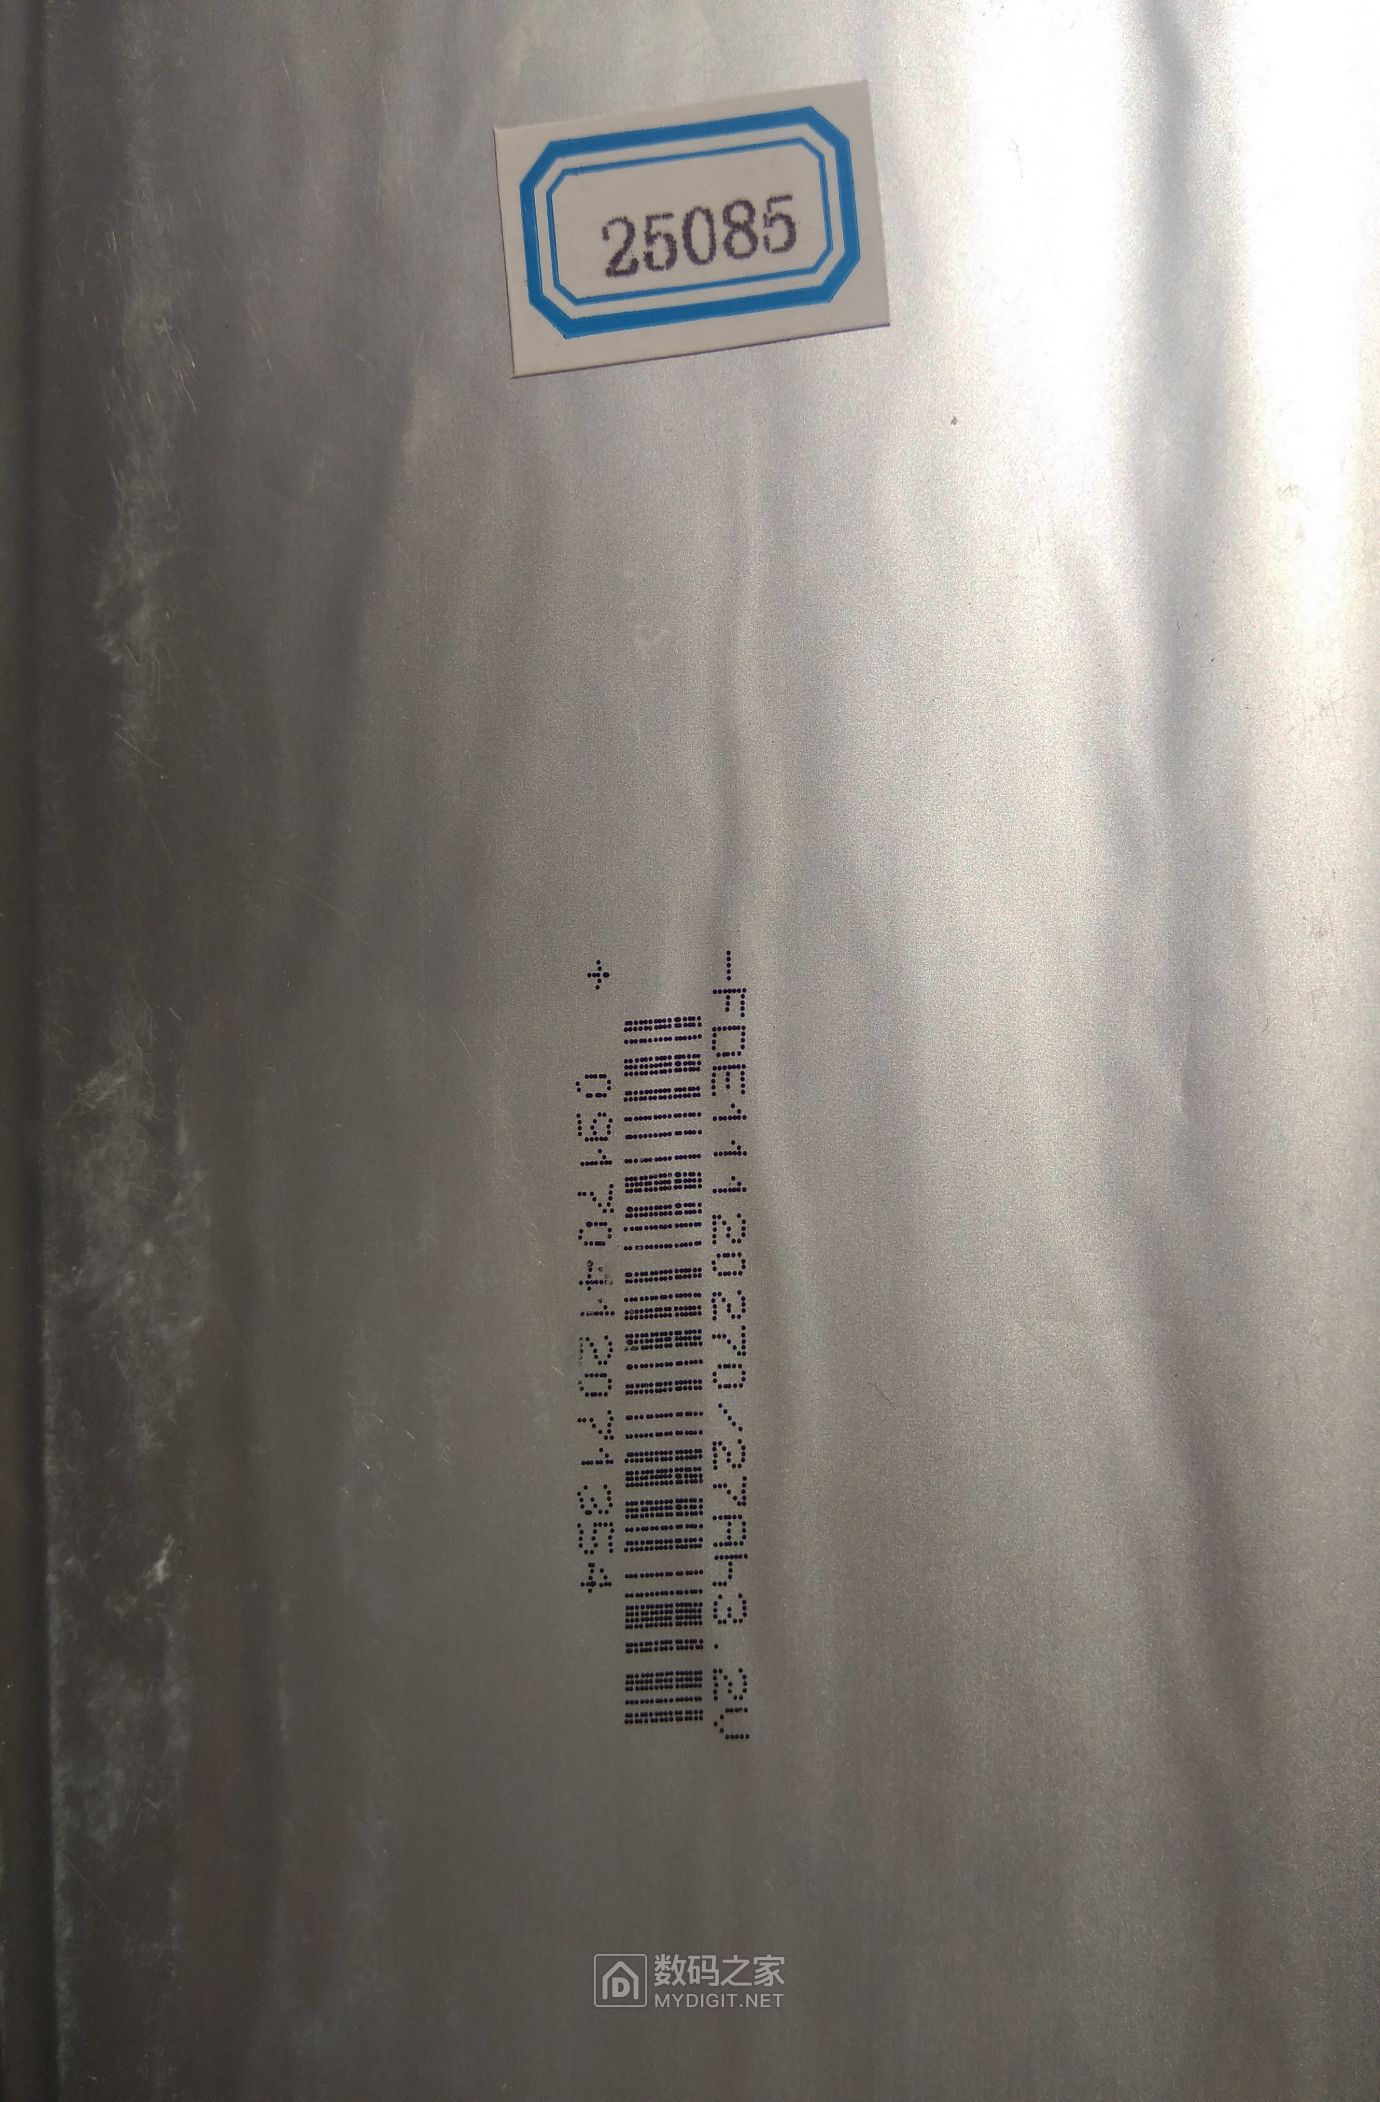 这是这个磷酸铁理电池的铭牌以及卖家分容的贴标,容量27安时,实际25安时,日期不懂得怎么看 ... ... ... ... ...